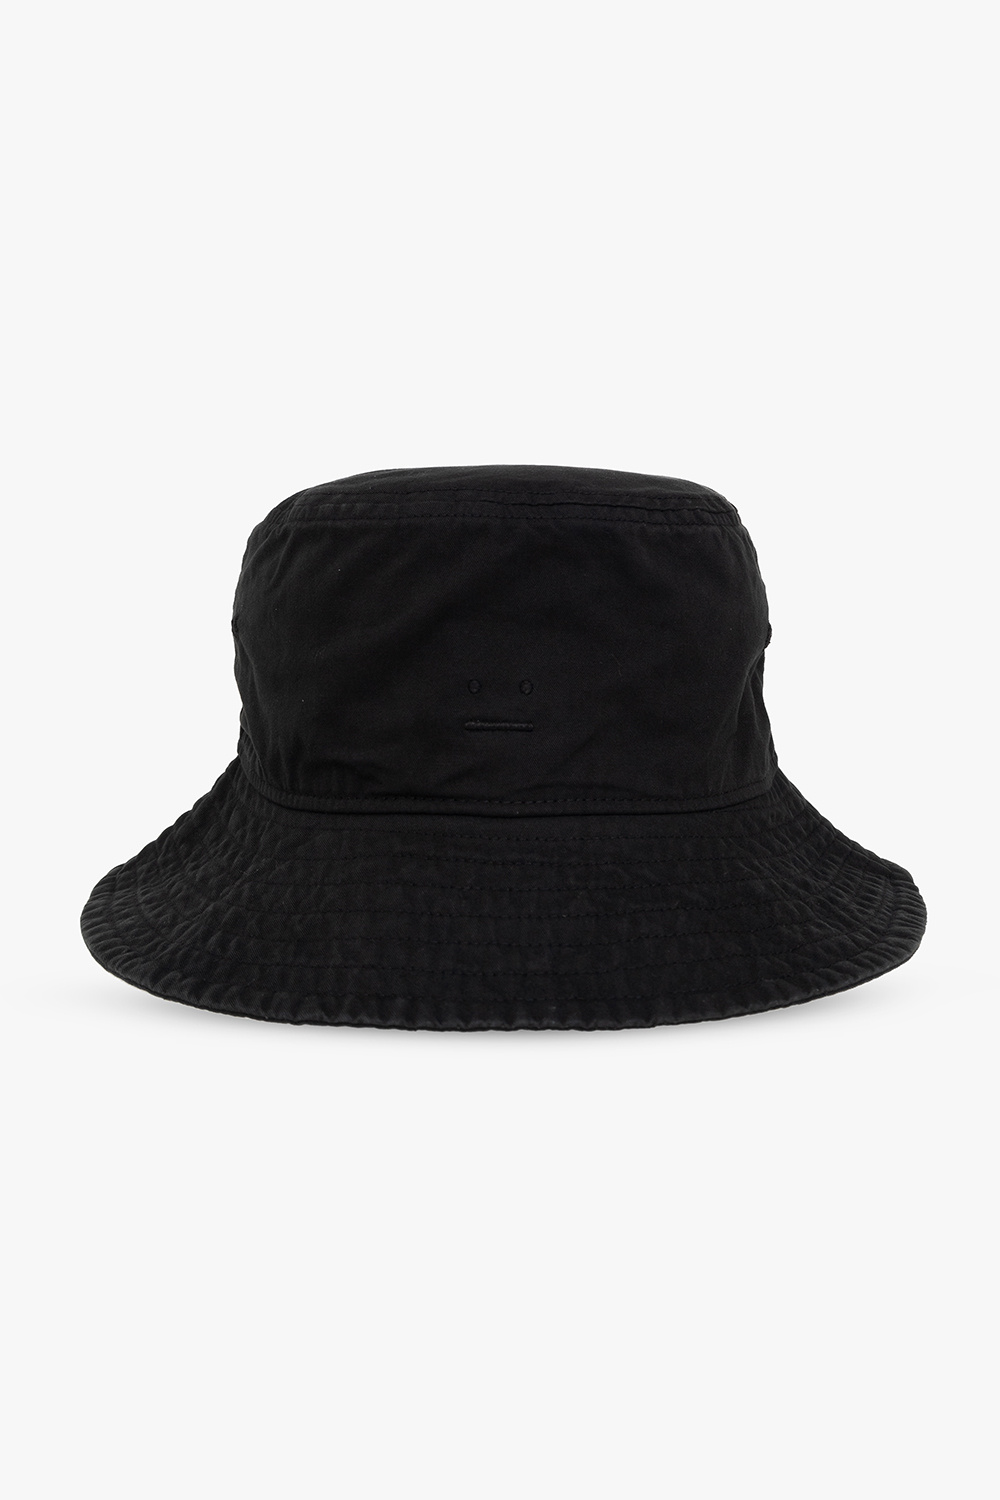 Bunka Fashion College Style w/ Zebra Print Bucket Hat, Fila Jacket